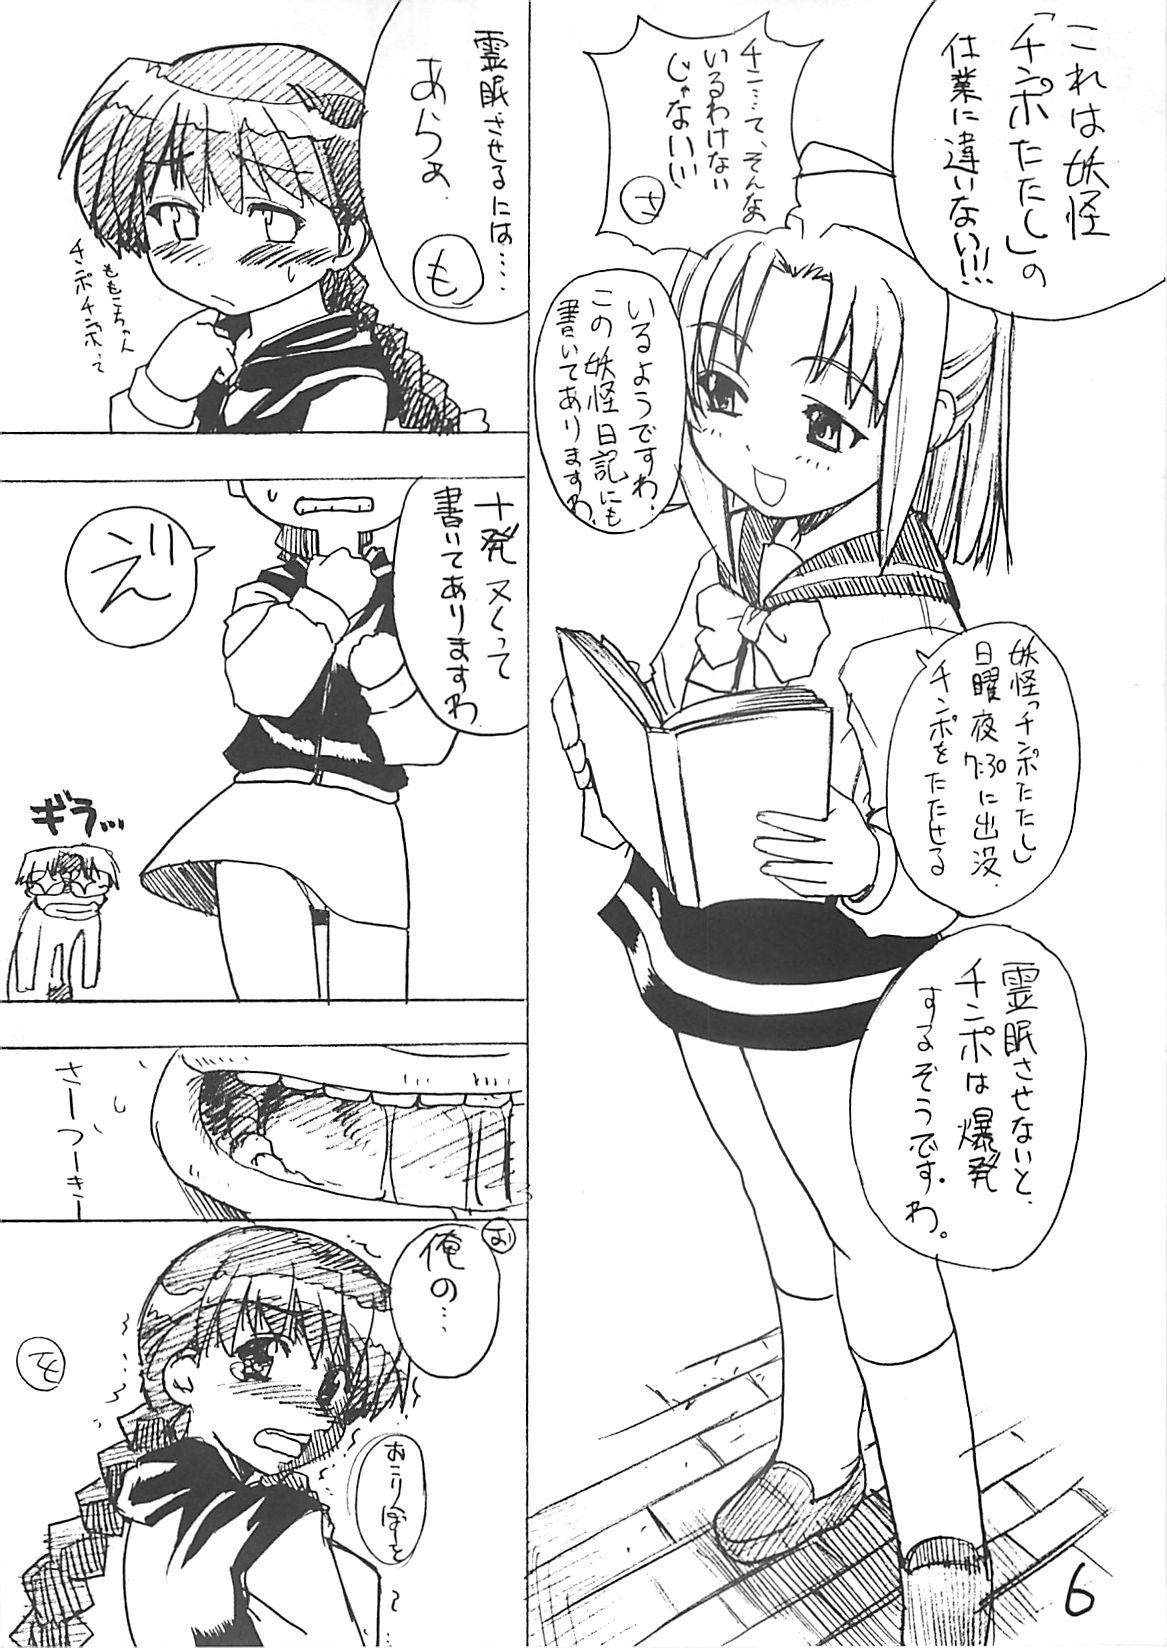 Nurumassage Takehara Style - Gakkou no kaidan Bang - Page 5